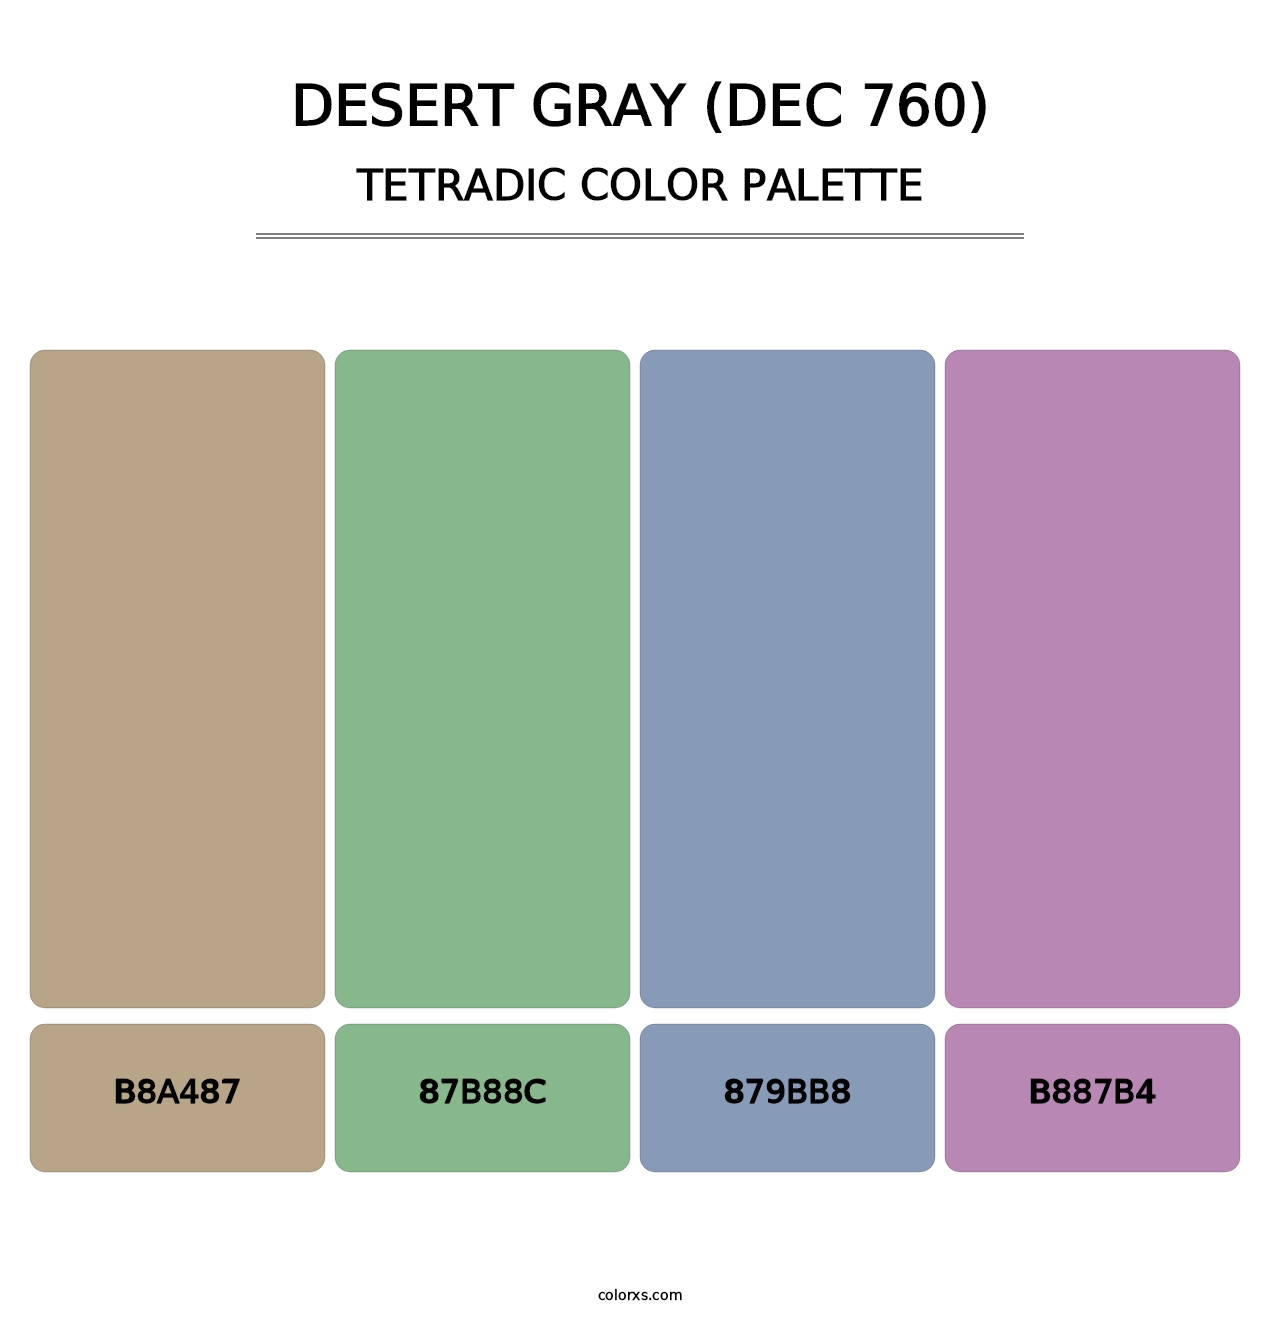 Desert Gray (DEC 760) - Tetradic Color Palette